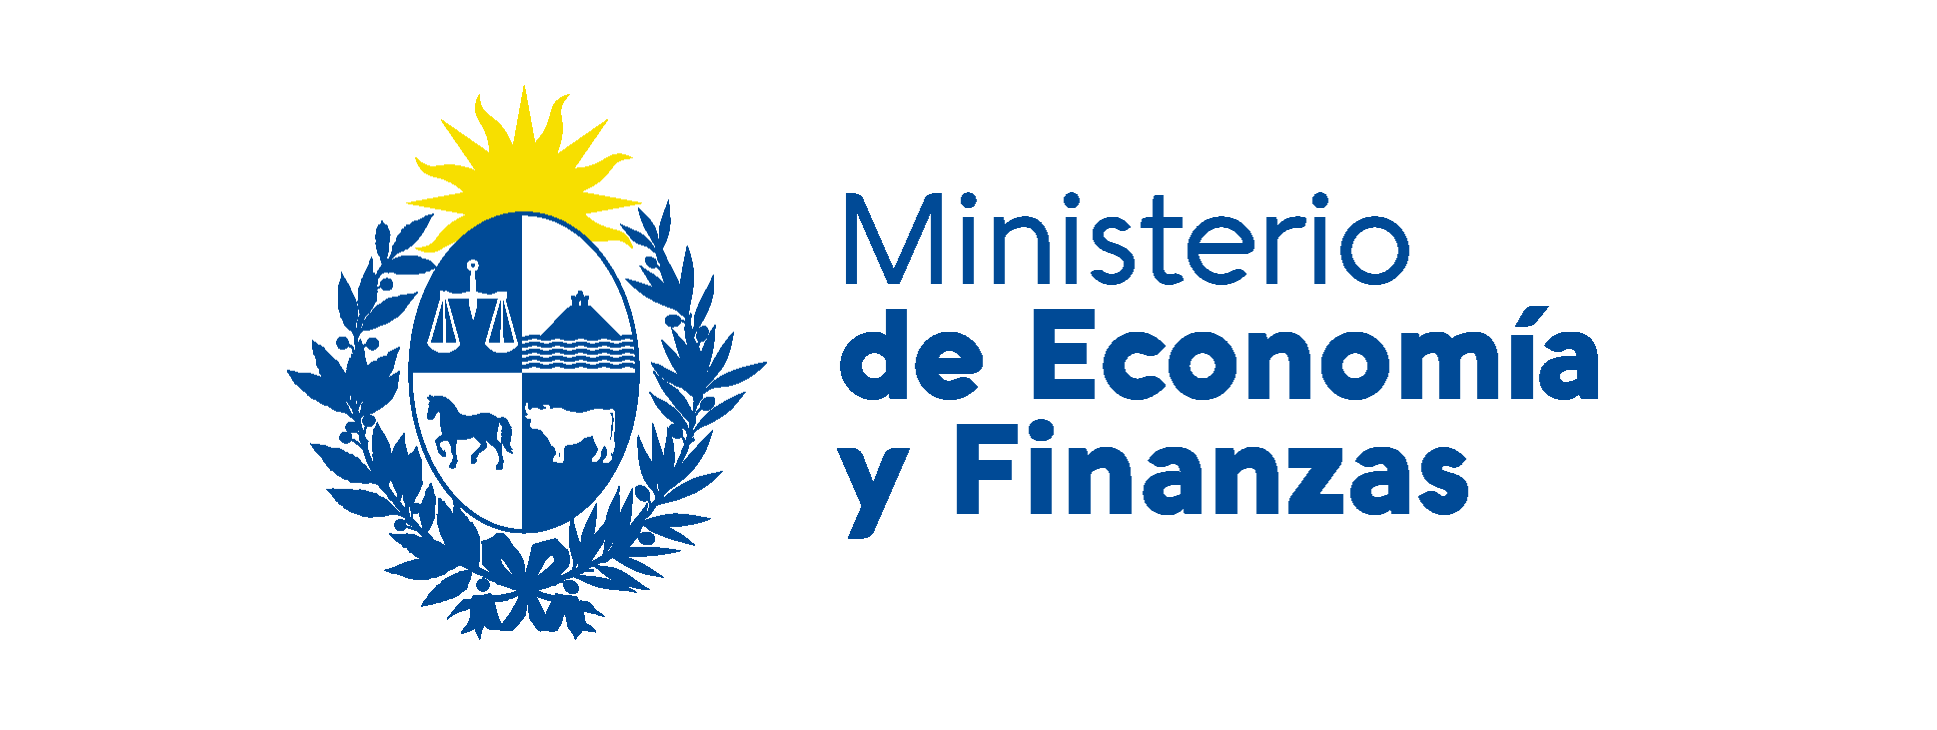 Banner con logo del Ministerio de Economía y Finanzas.